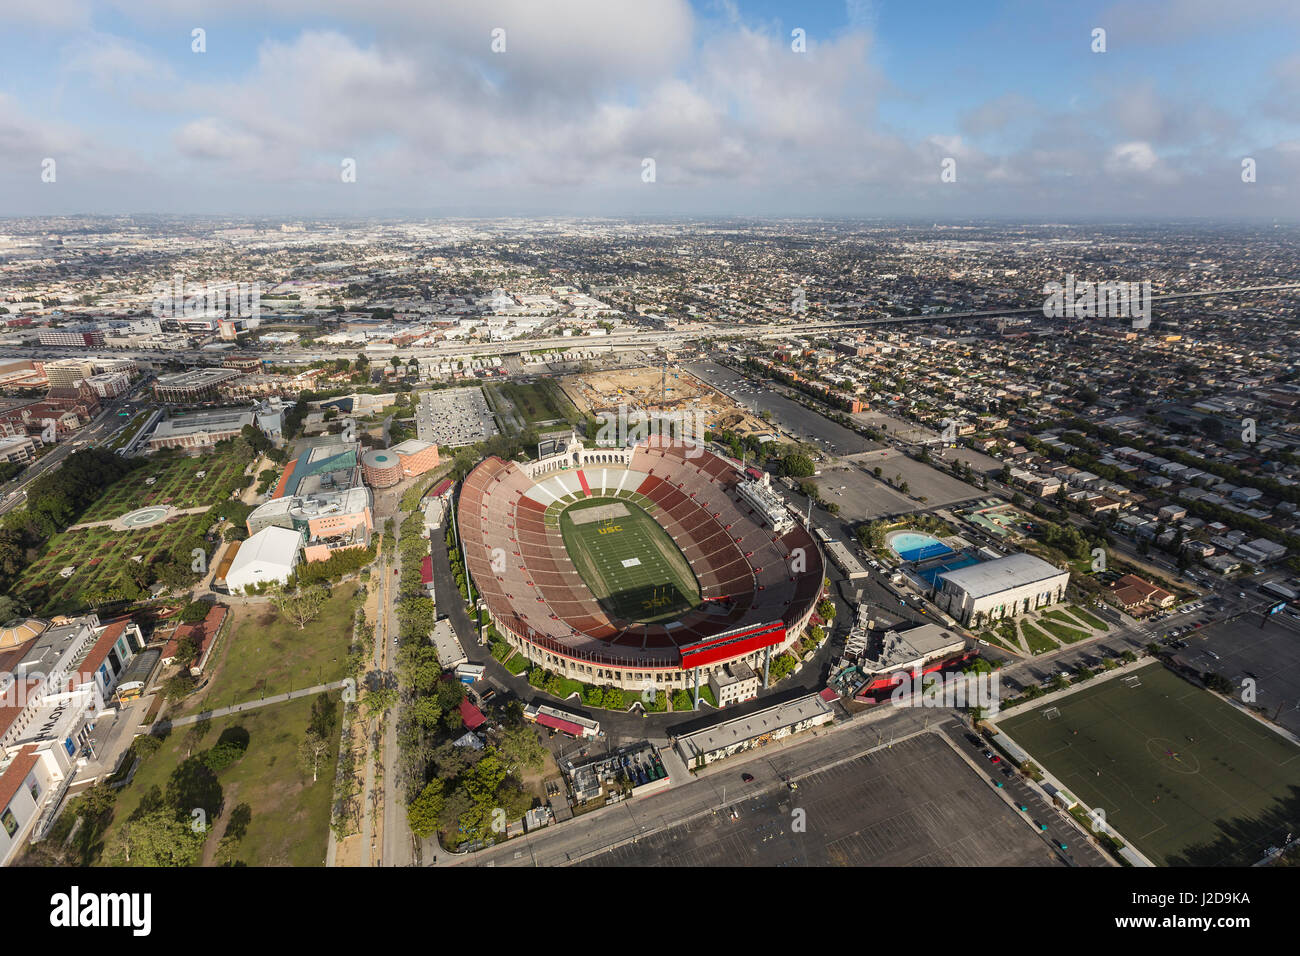 Los Angeles, California, EE.UU. - 12 de abril de 2017: Vista aérea del histórico Coliseo stadium, cerca de la Universidad del Sur de California. Foto de stock